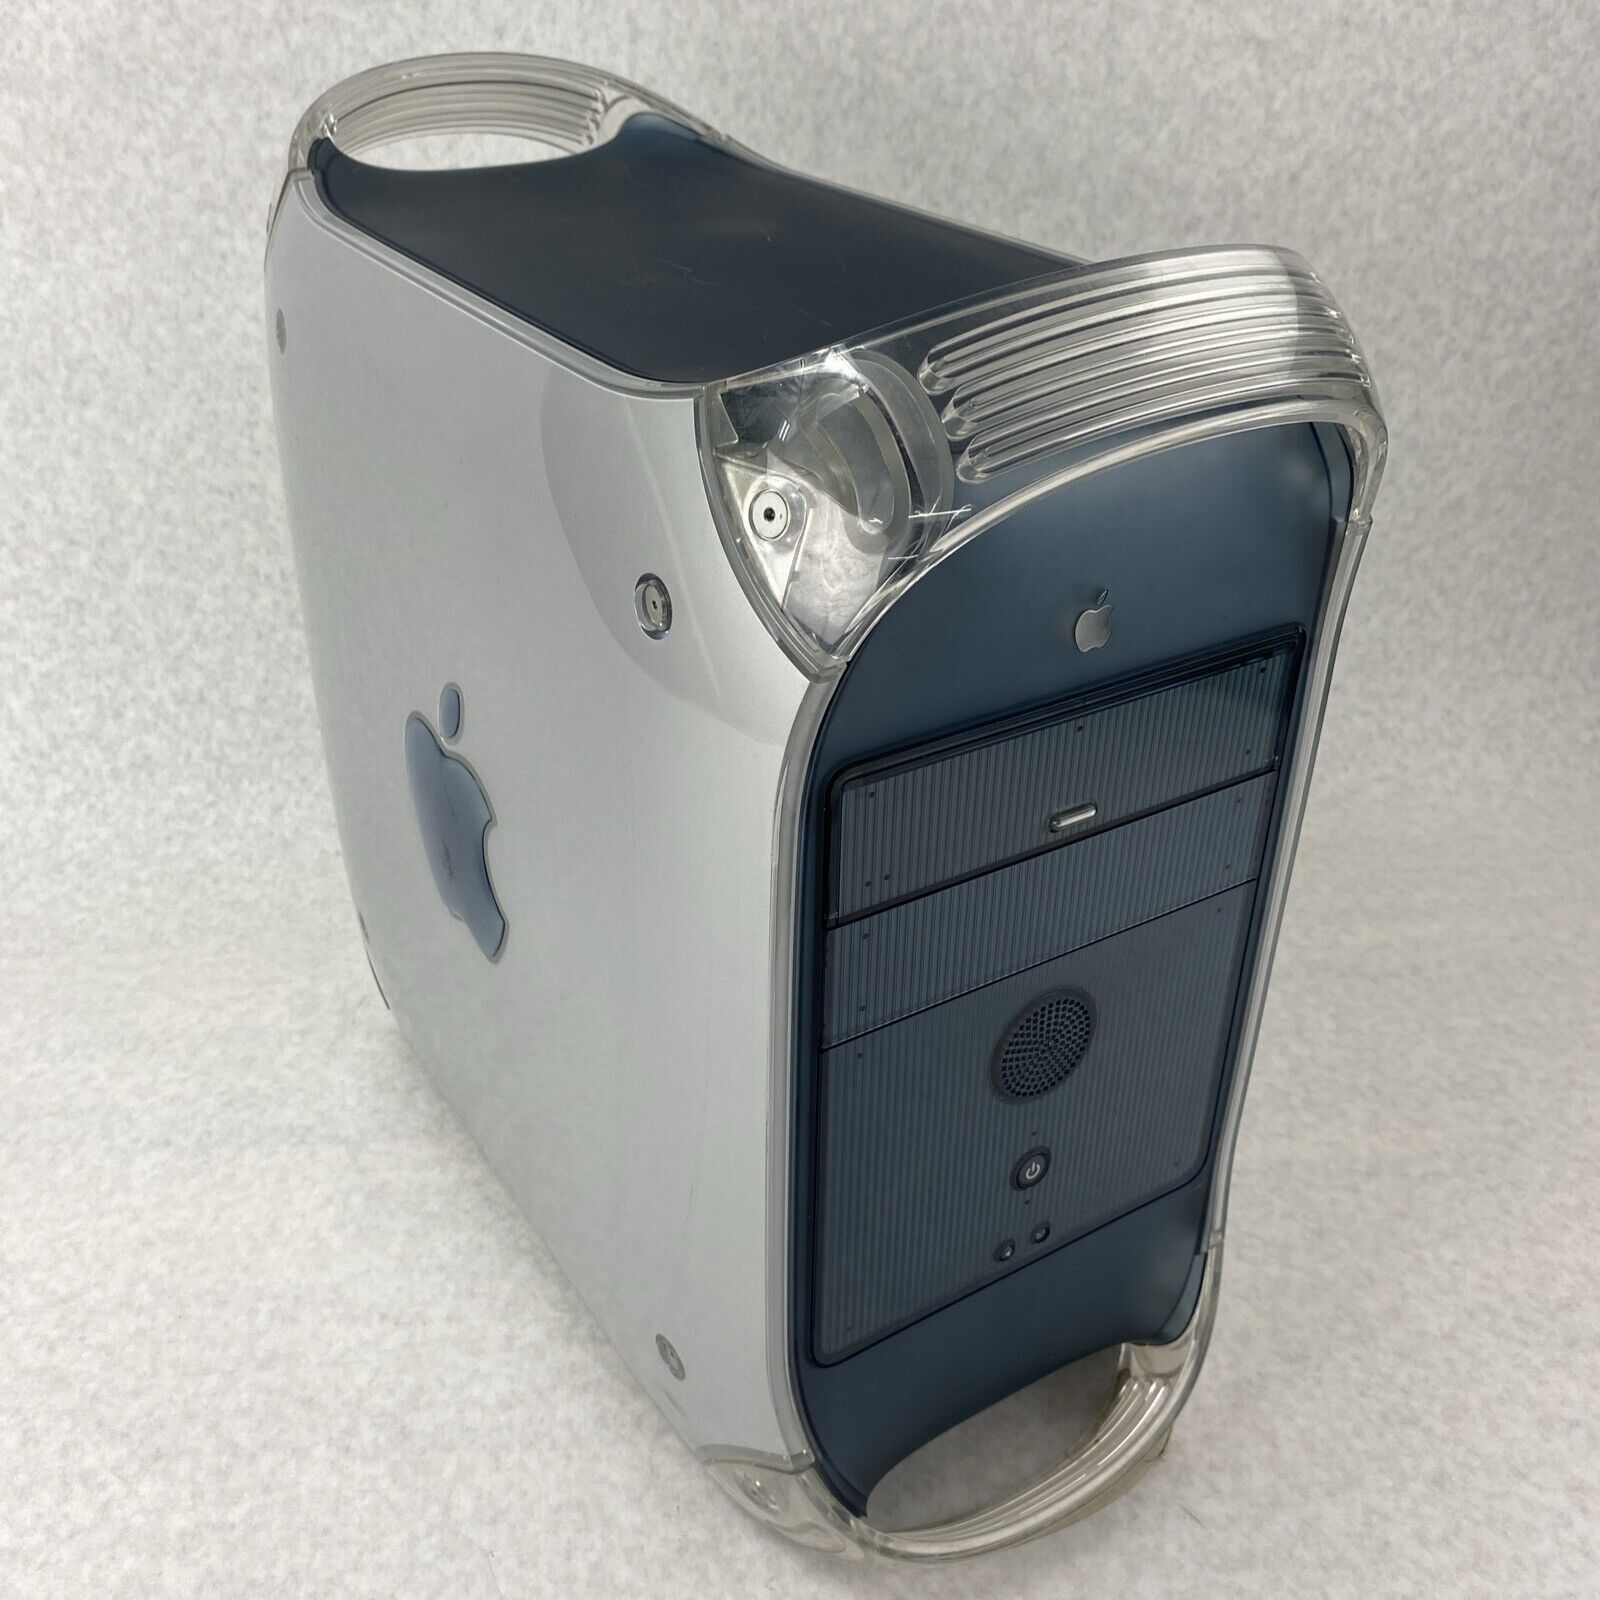 Apple Power Mac G4 M5183 PowerPC G4 533Mhz 384MB RAM No HDD No OS